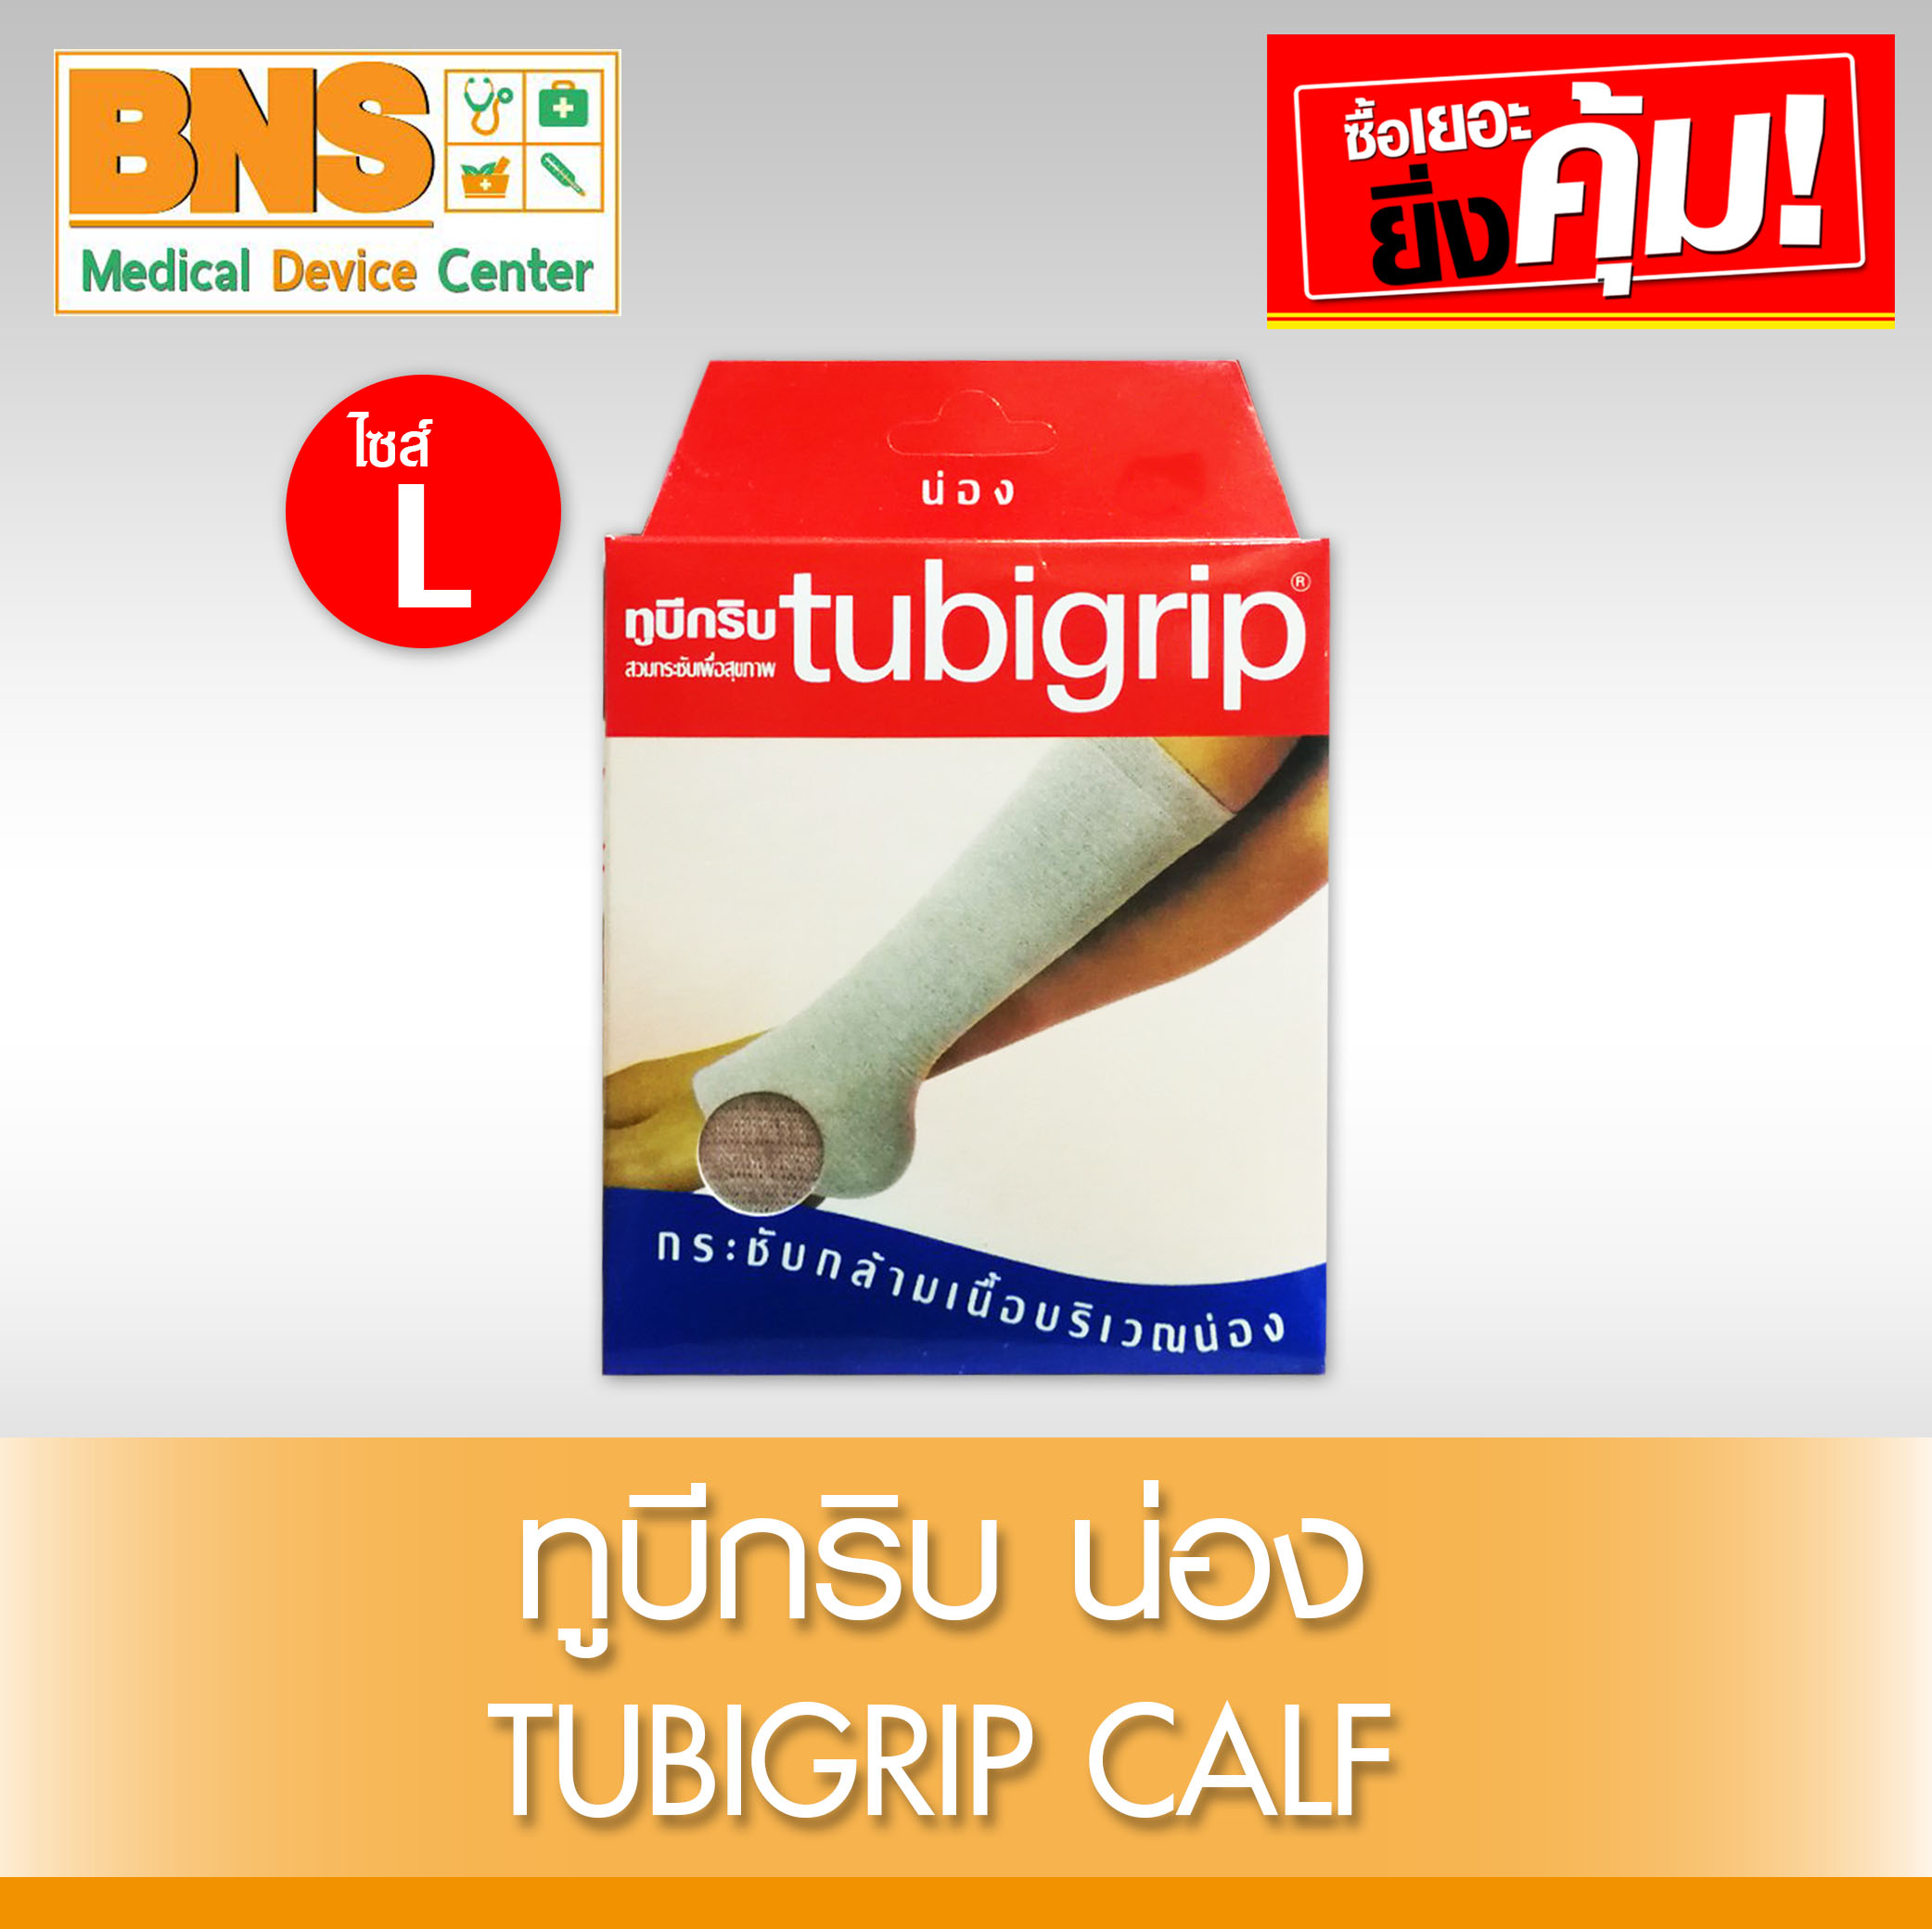 Tubigrip Calf ทูบีกริบ (น่อง) ไซร้ L (สินค้าใหม่) (ถูกที่สุด) By BNS